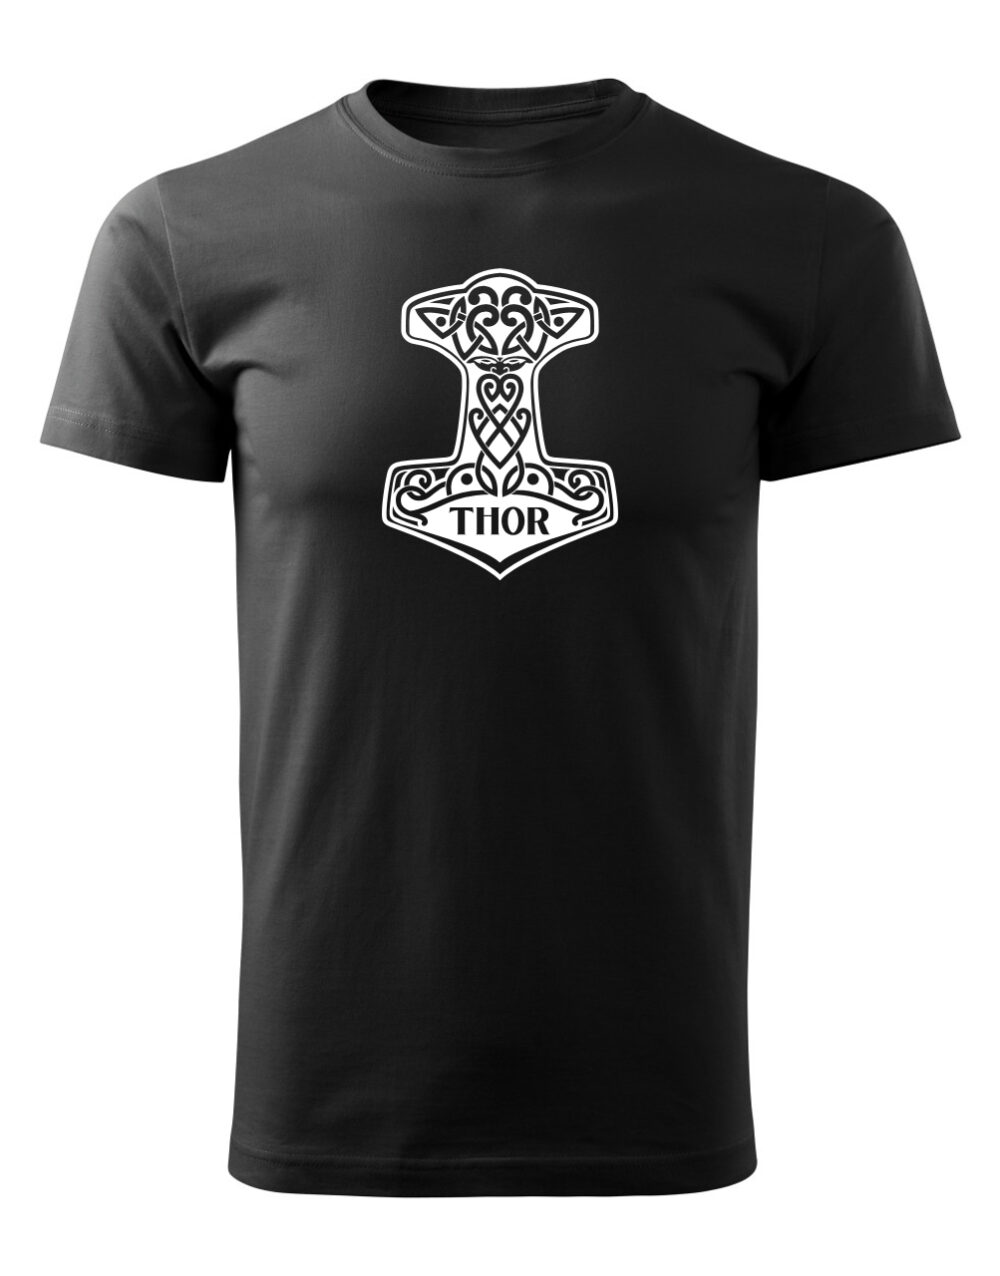 Pánské tričko s potiskem Thorovo kladivo černá